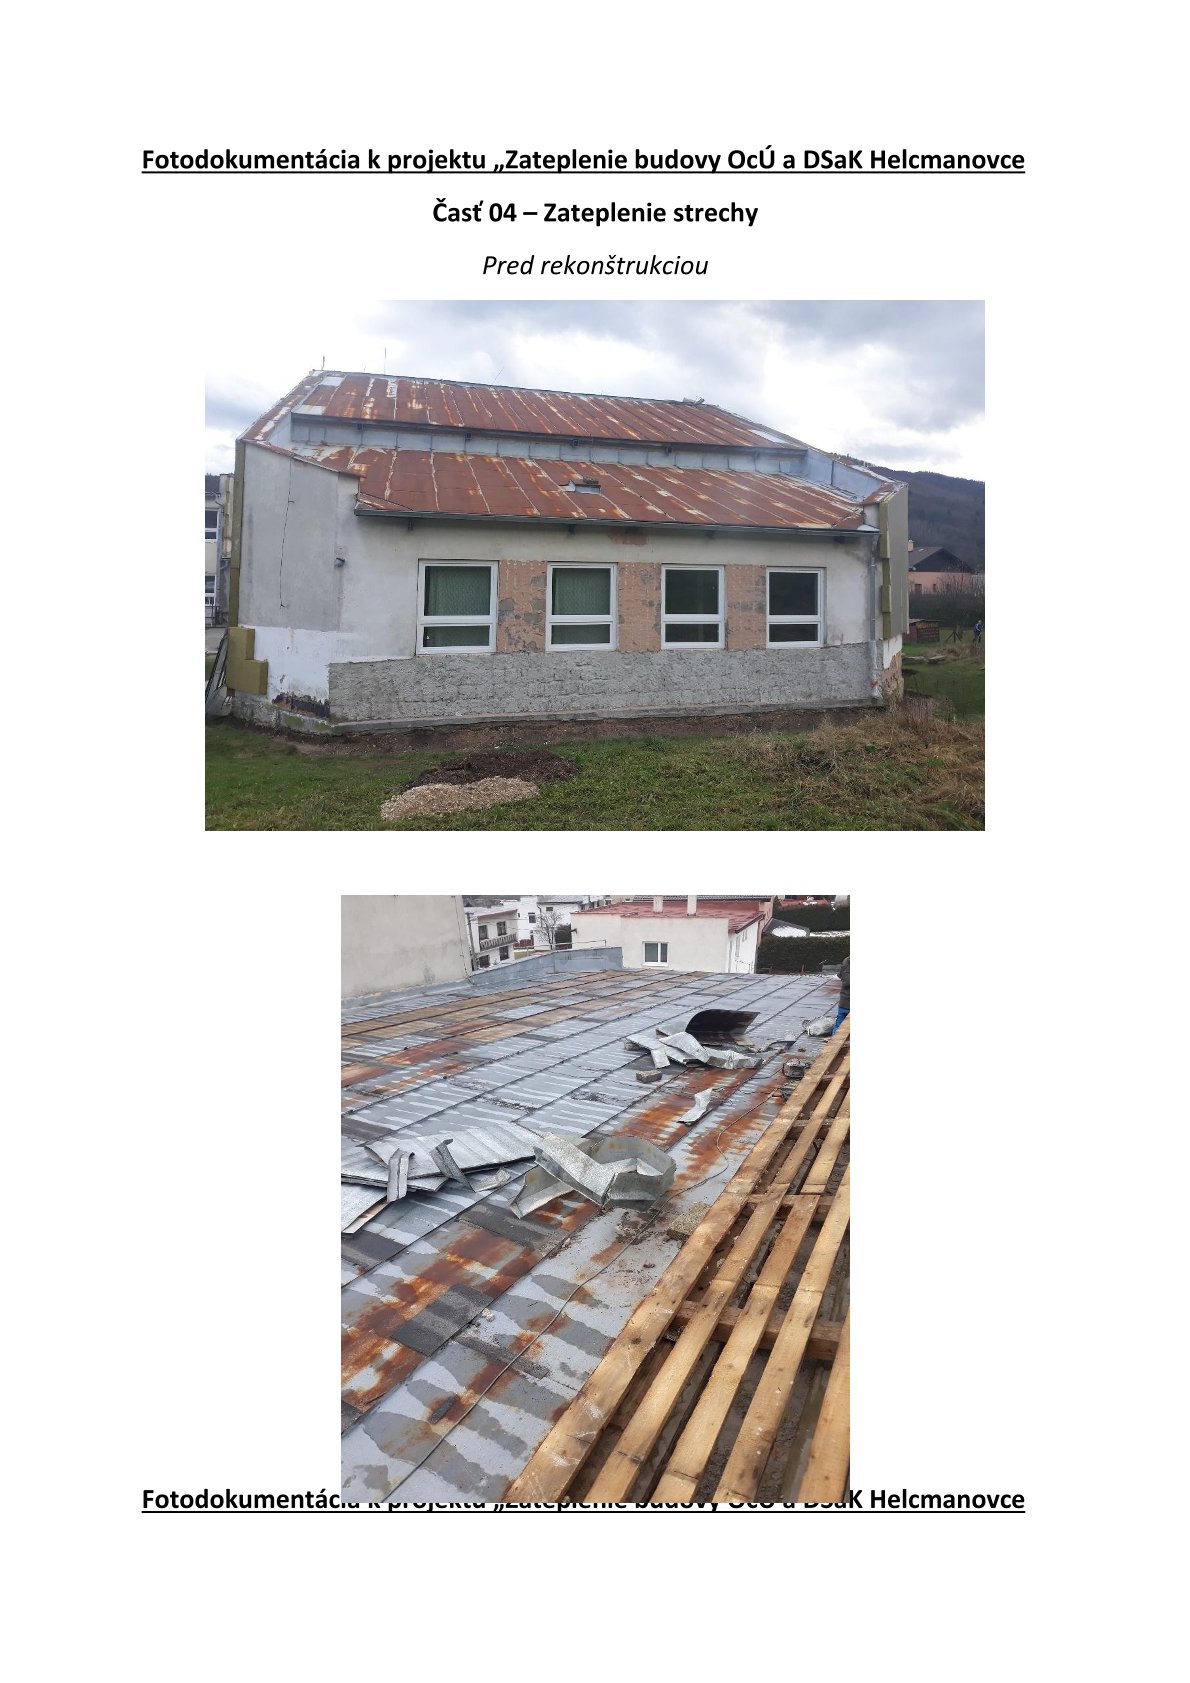 Zateplenie budovy OcÚ a DSaK Helcmanovce 2019 - 2020 - Zateplenie strechy 1